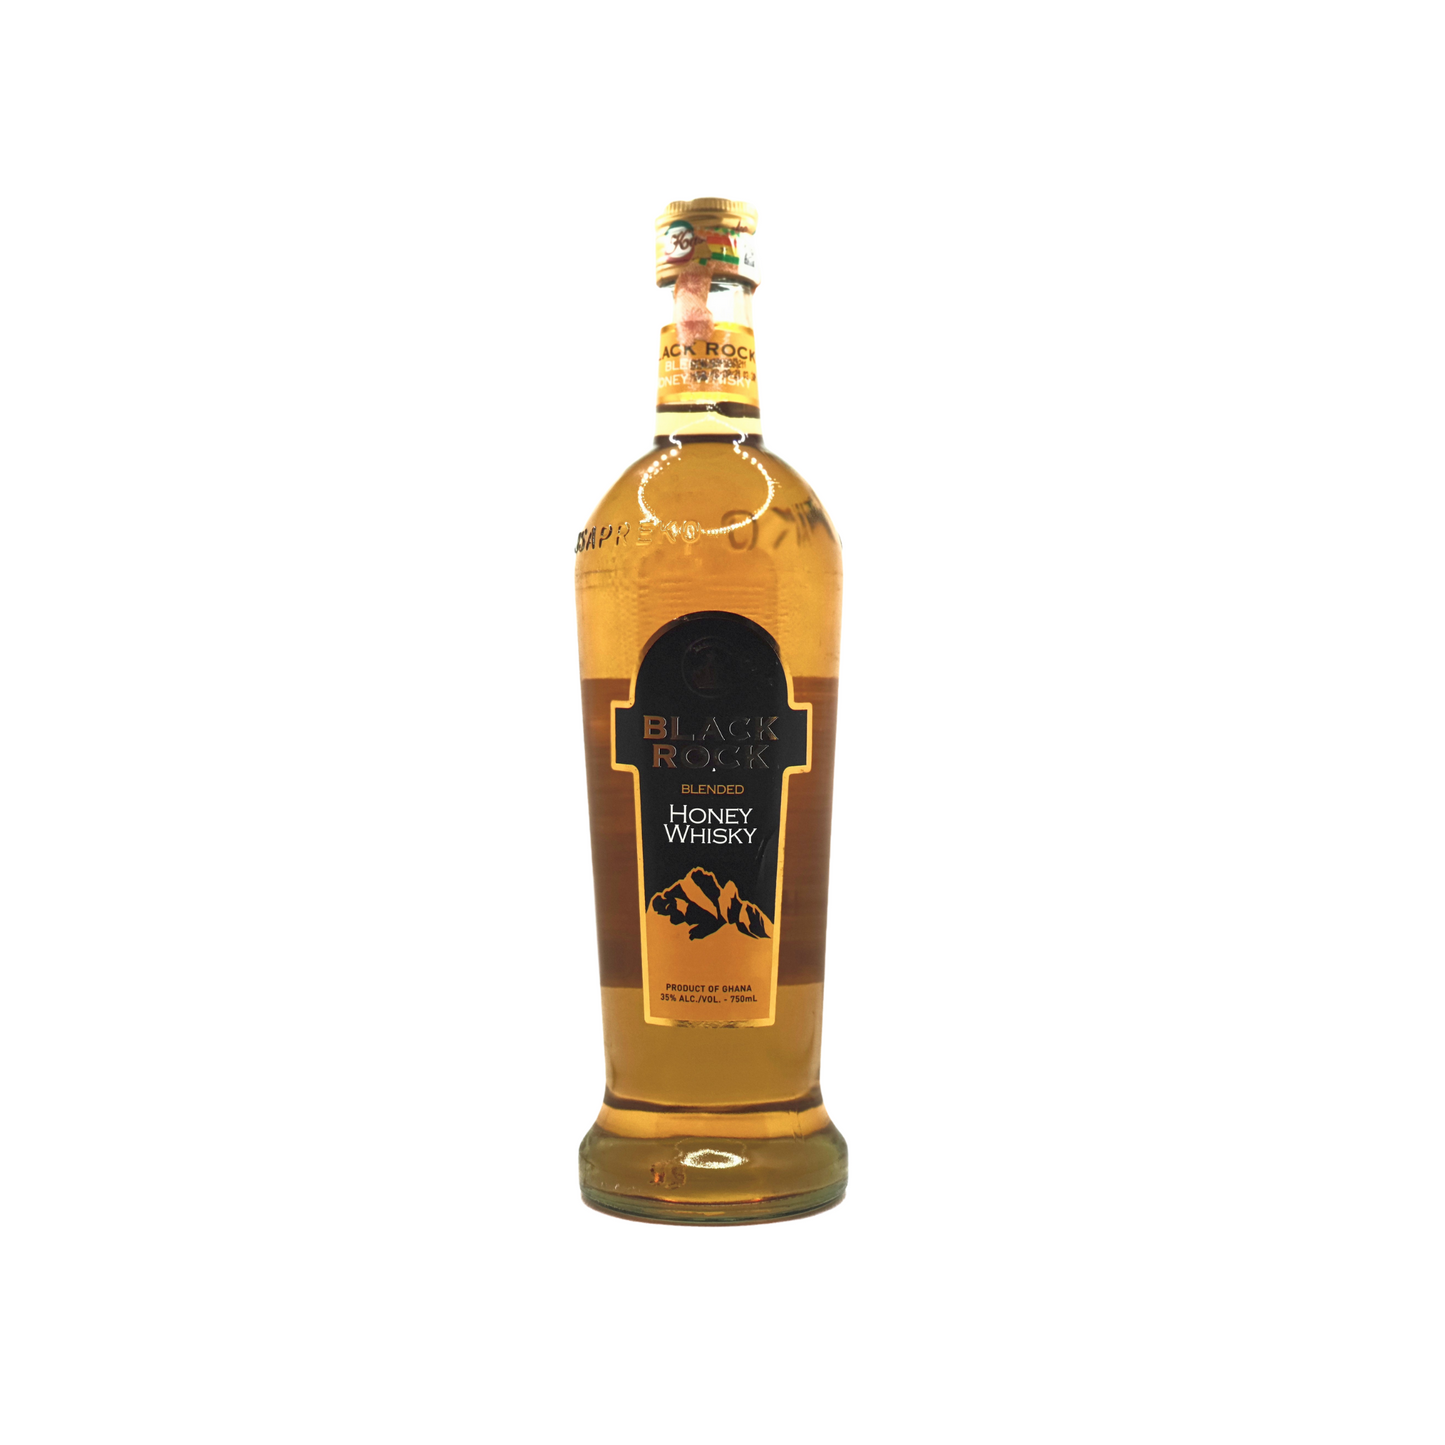 750 millilitre bottle of black rock blended honey whisky